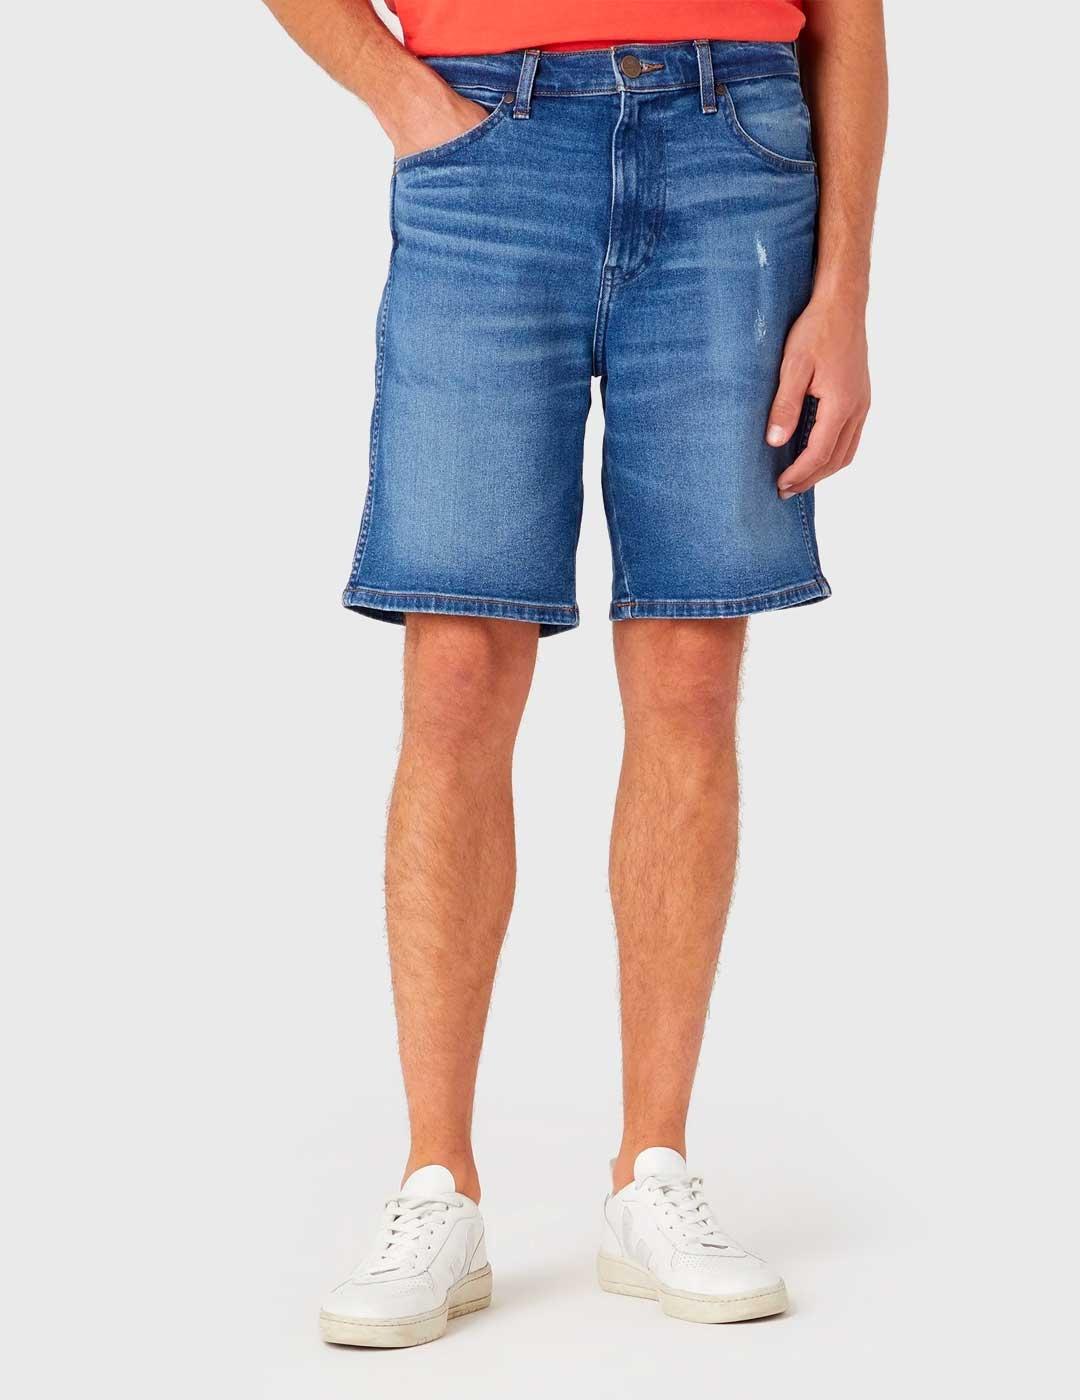 Pantalones cortos Wrangler Frontier azules para hombre